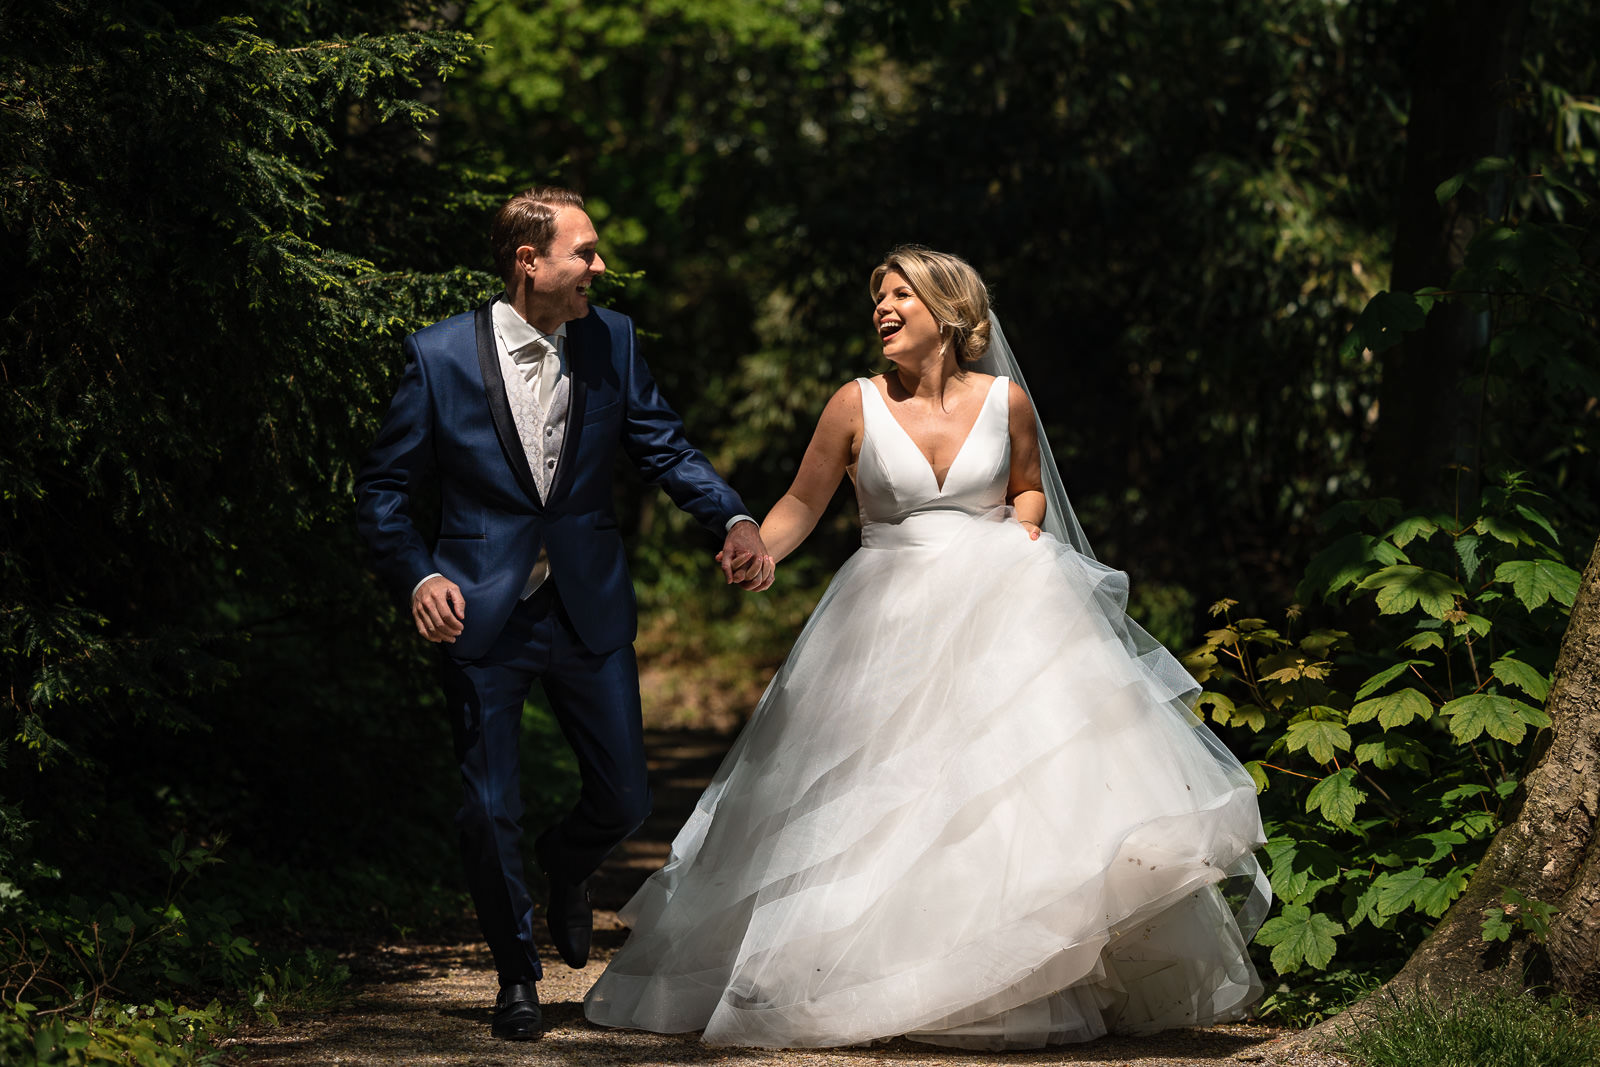 Vreugde bij bruidspaar tijdens fotoshoot Trouwfotograaf Den Haag